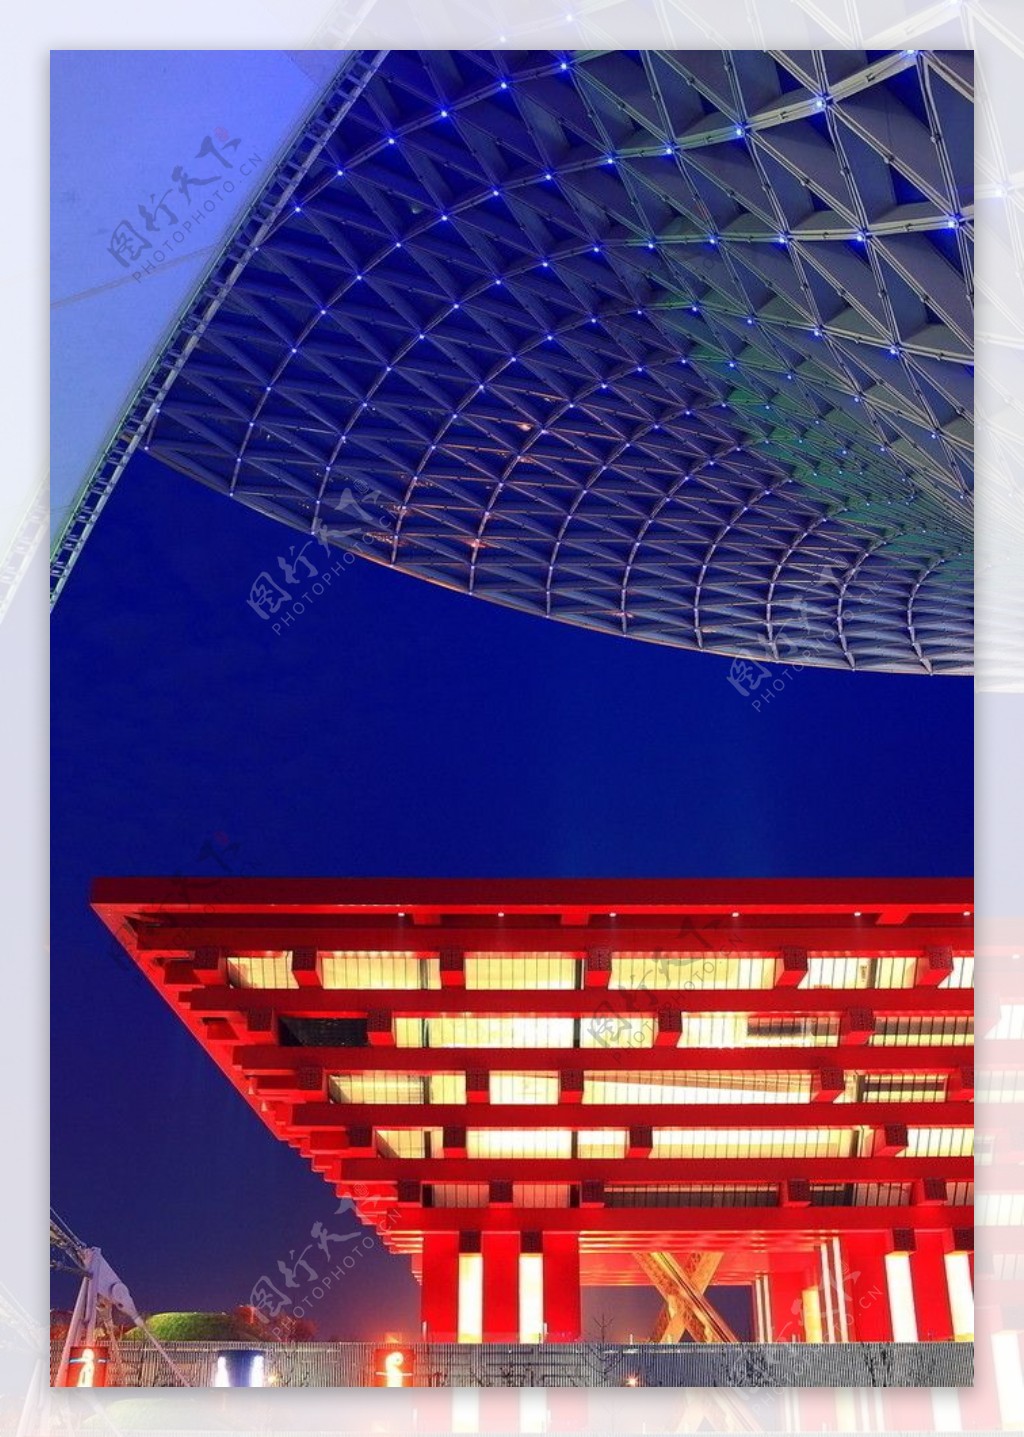 上海世博會陽光穀中國館夜景图片